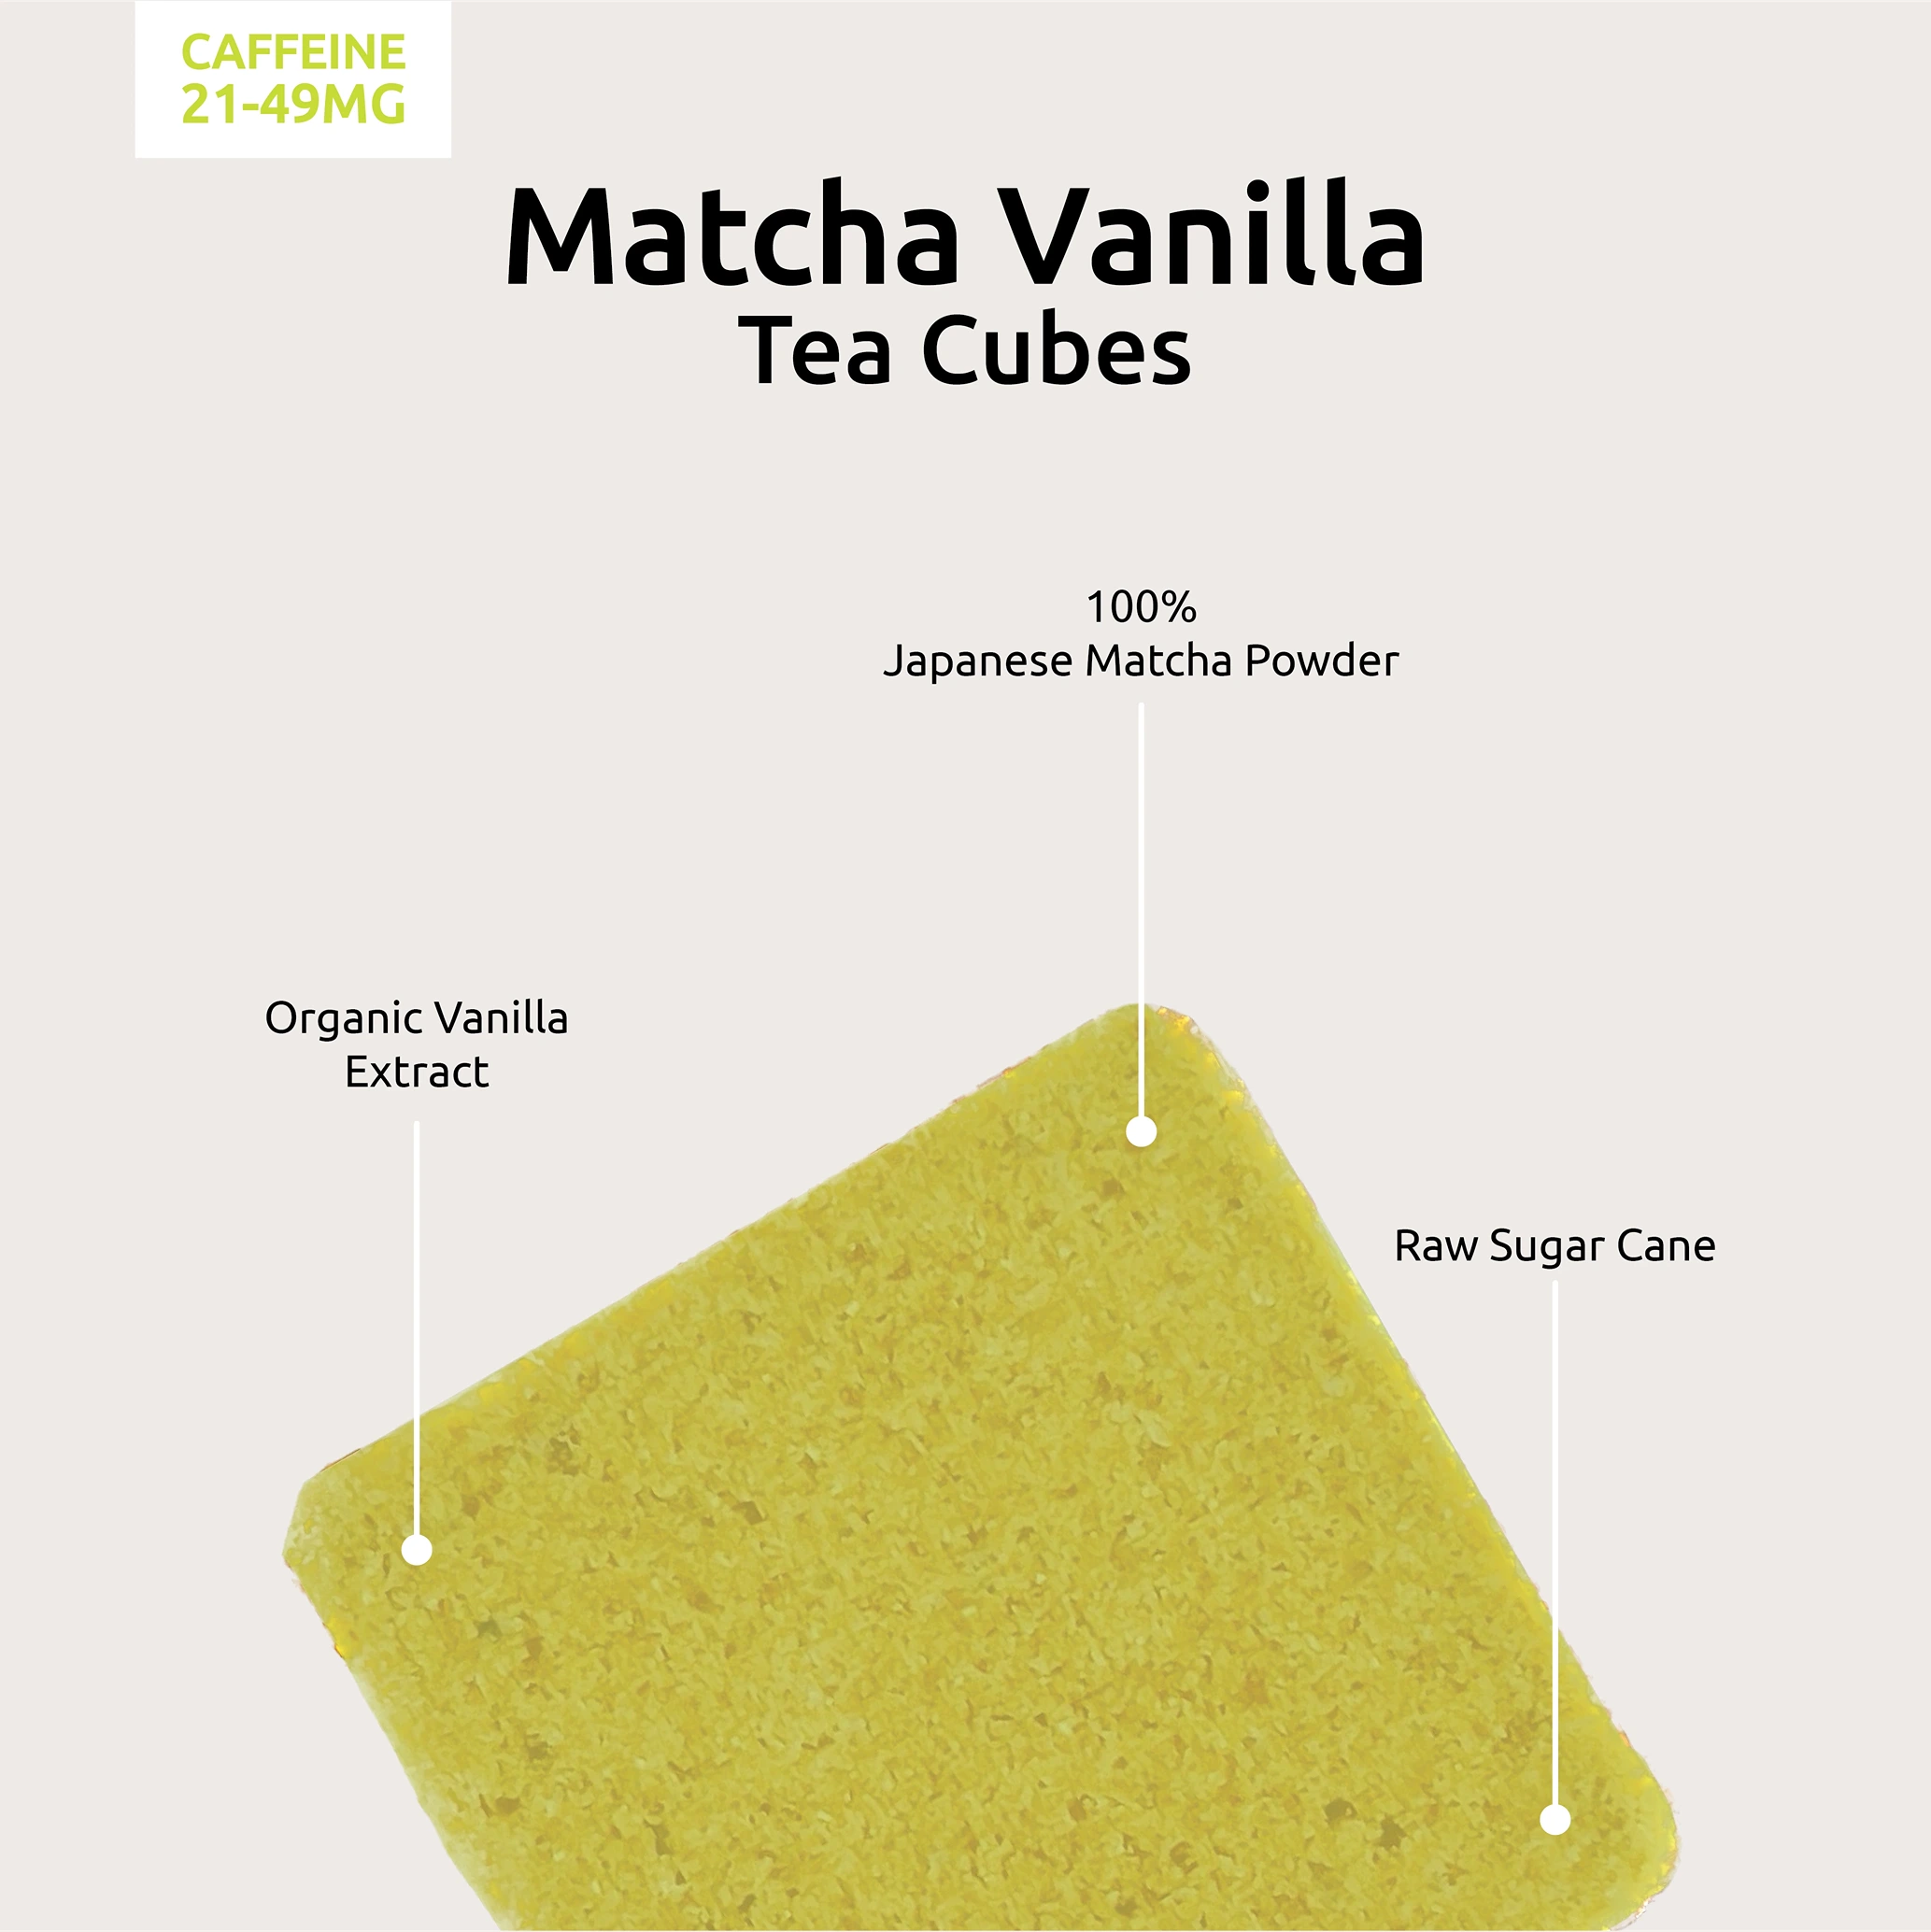 Matcha Vanilla Tea